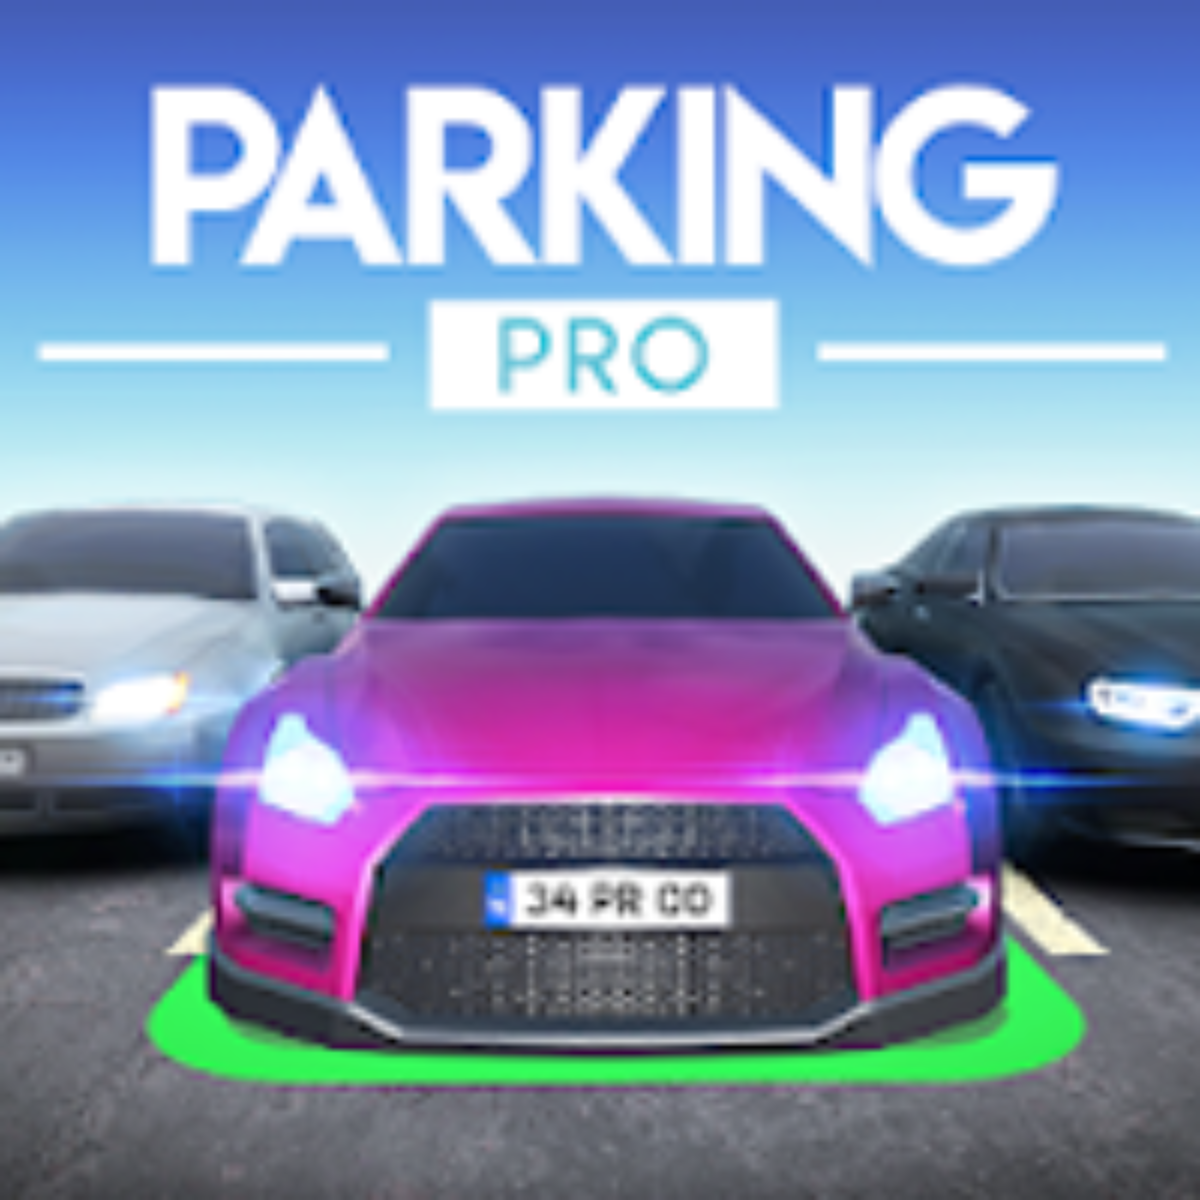 Car Parking Multiplayer v4.8.14.8 Apk Mod (Dinheiro Infinito) - Apk Mod